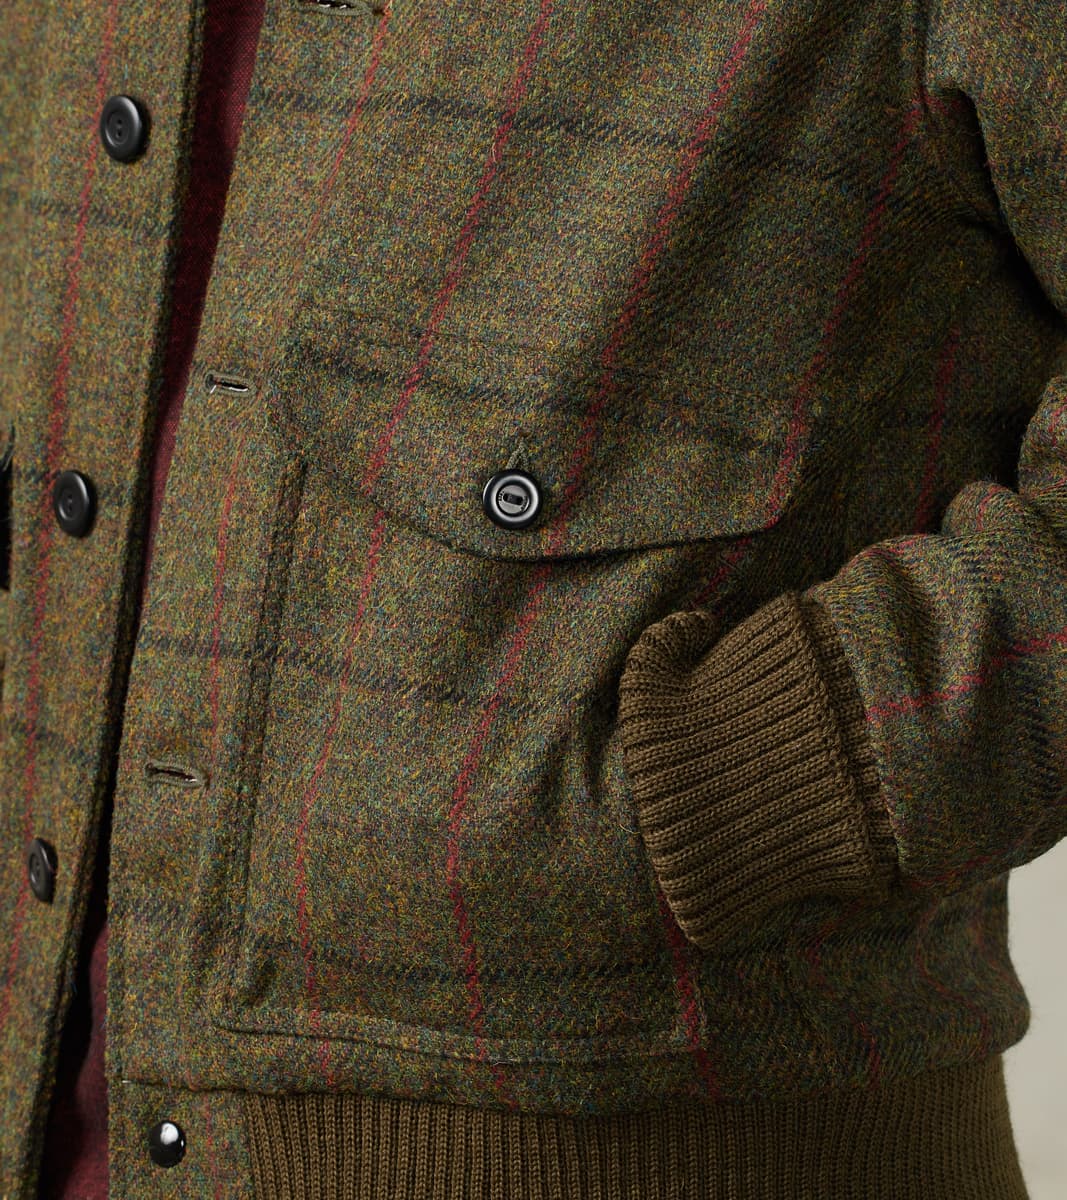 Custom tailored Jacket Harris tweed brown check